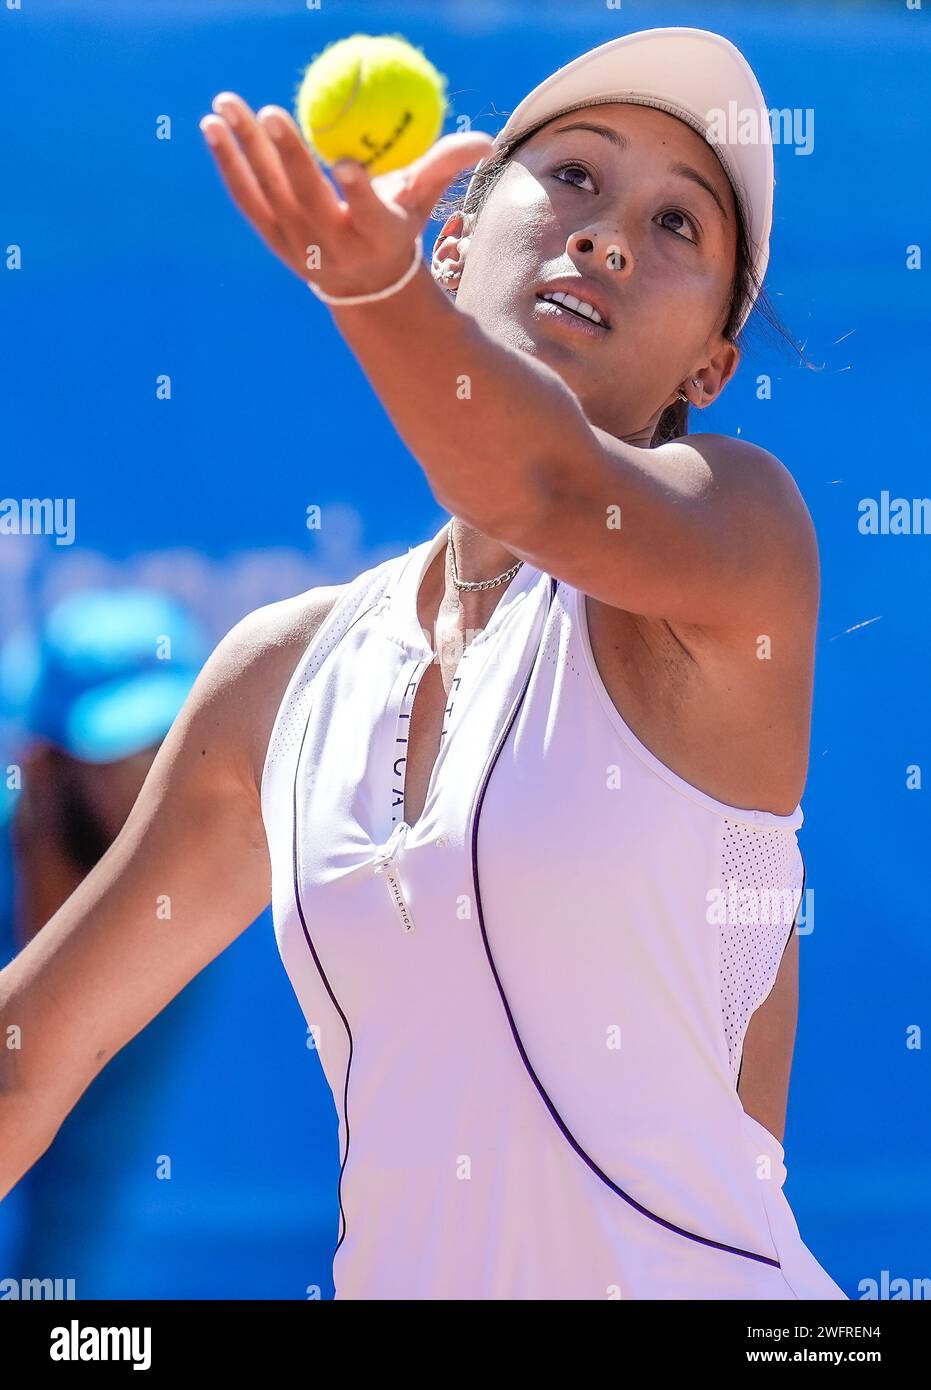 Priscilla Hon aus Australien im Finale des ITF W60 Canberra Claycourt International #1 Turniers 2023 Stockfoto